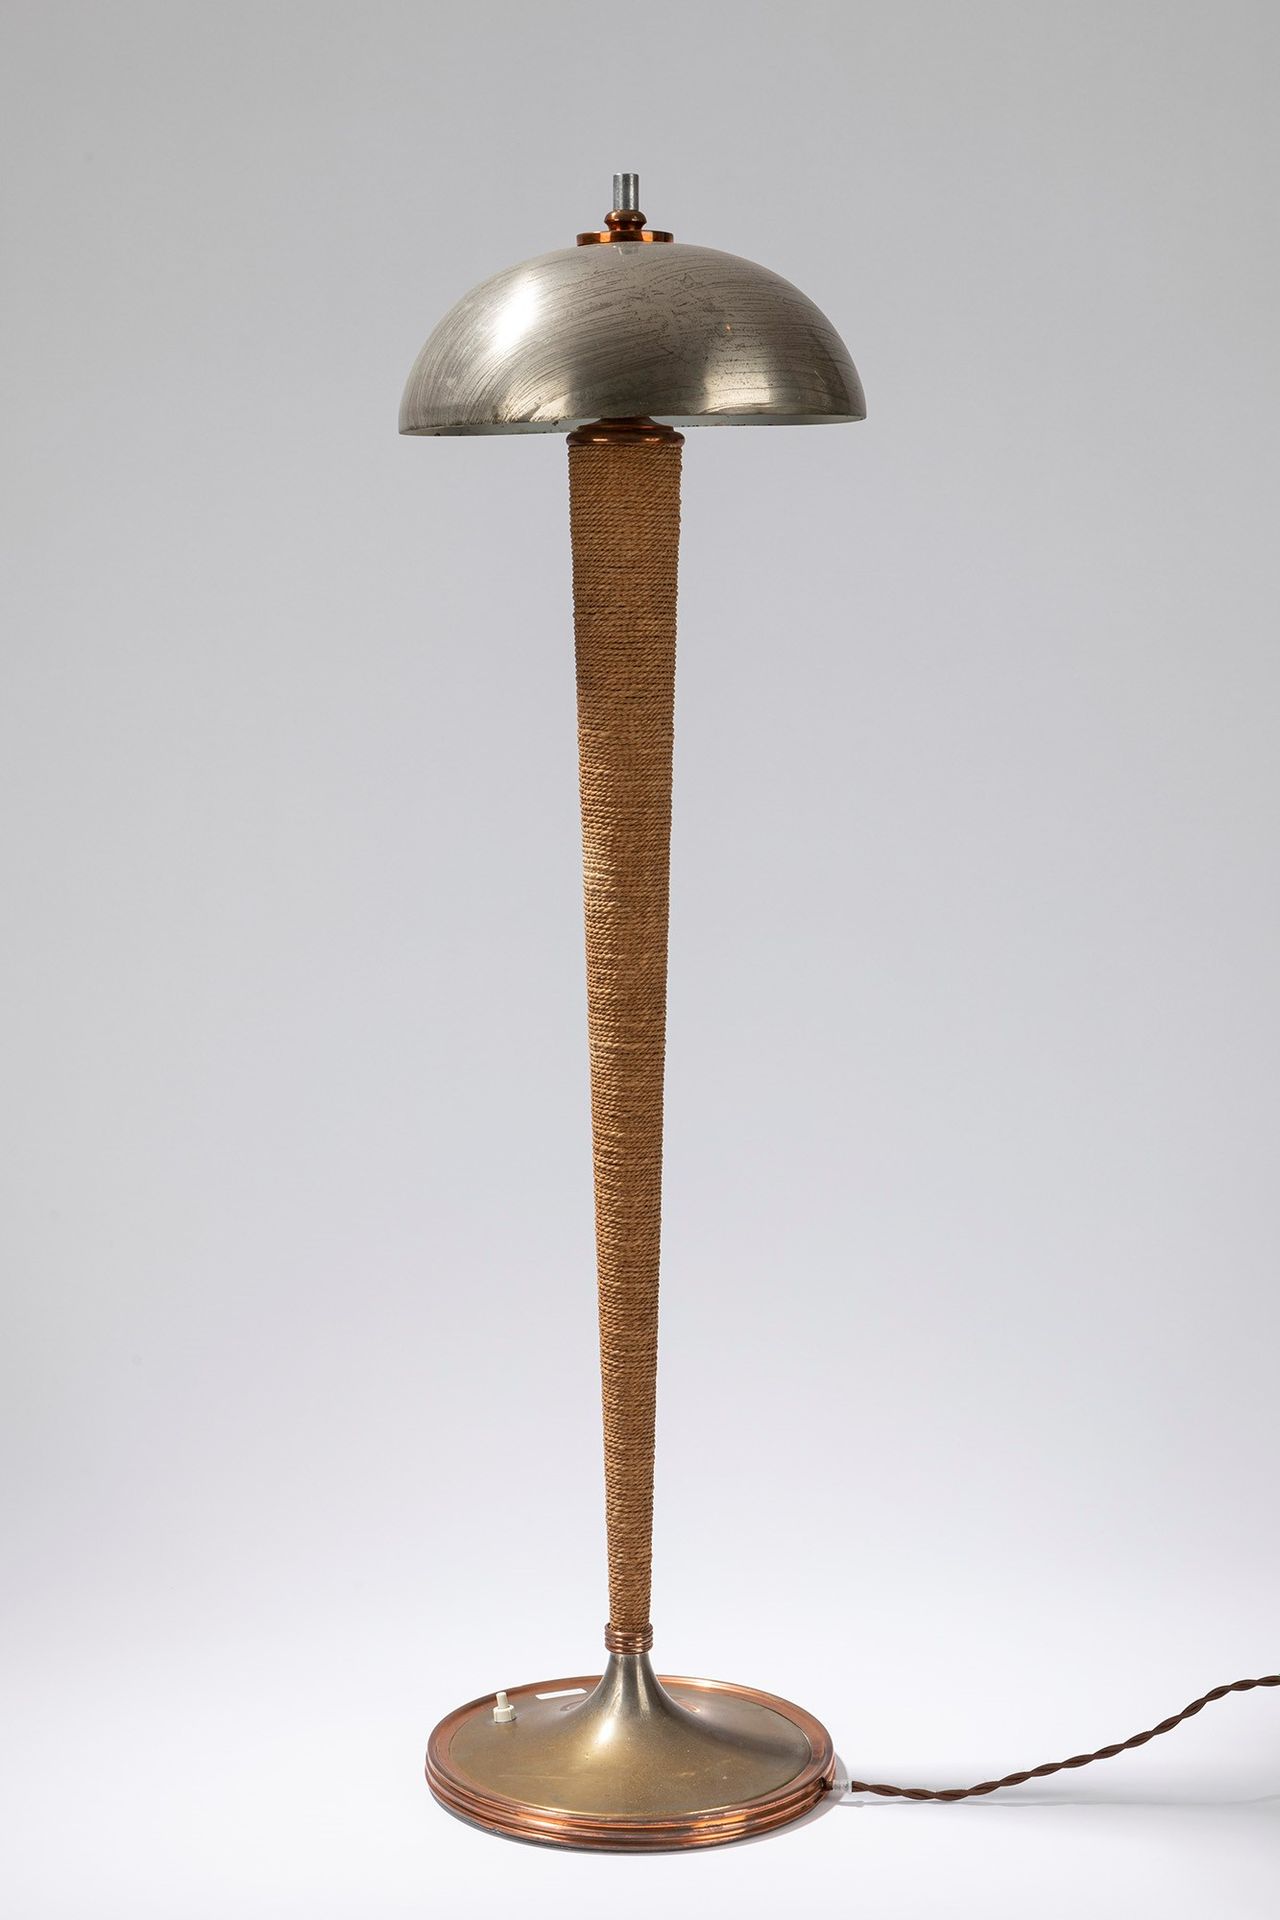 FRENCH MANUFACTURE Lampe de table, période 60's

h cm 90 x 25
métal avec tige en&hellip;